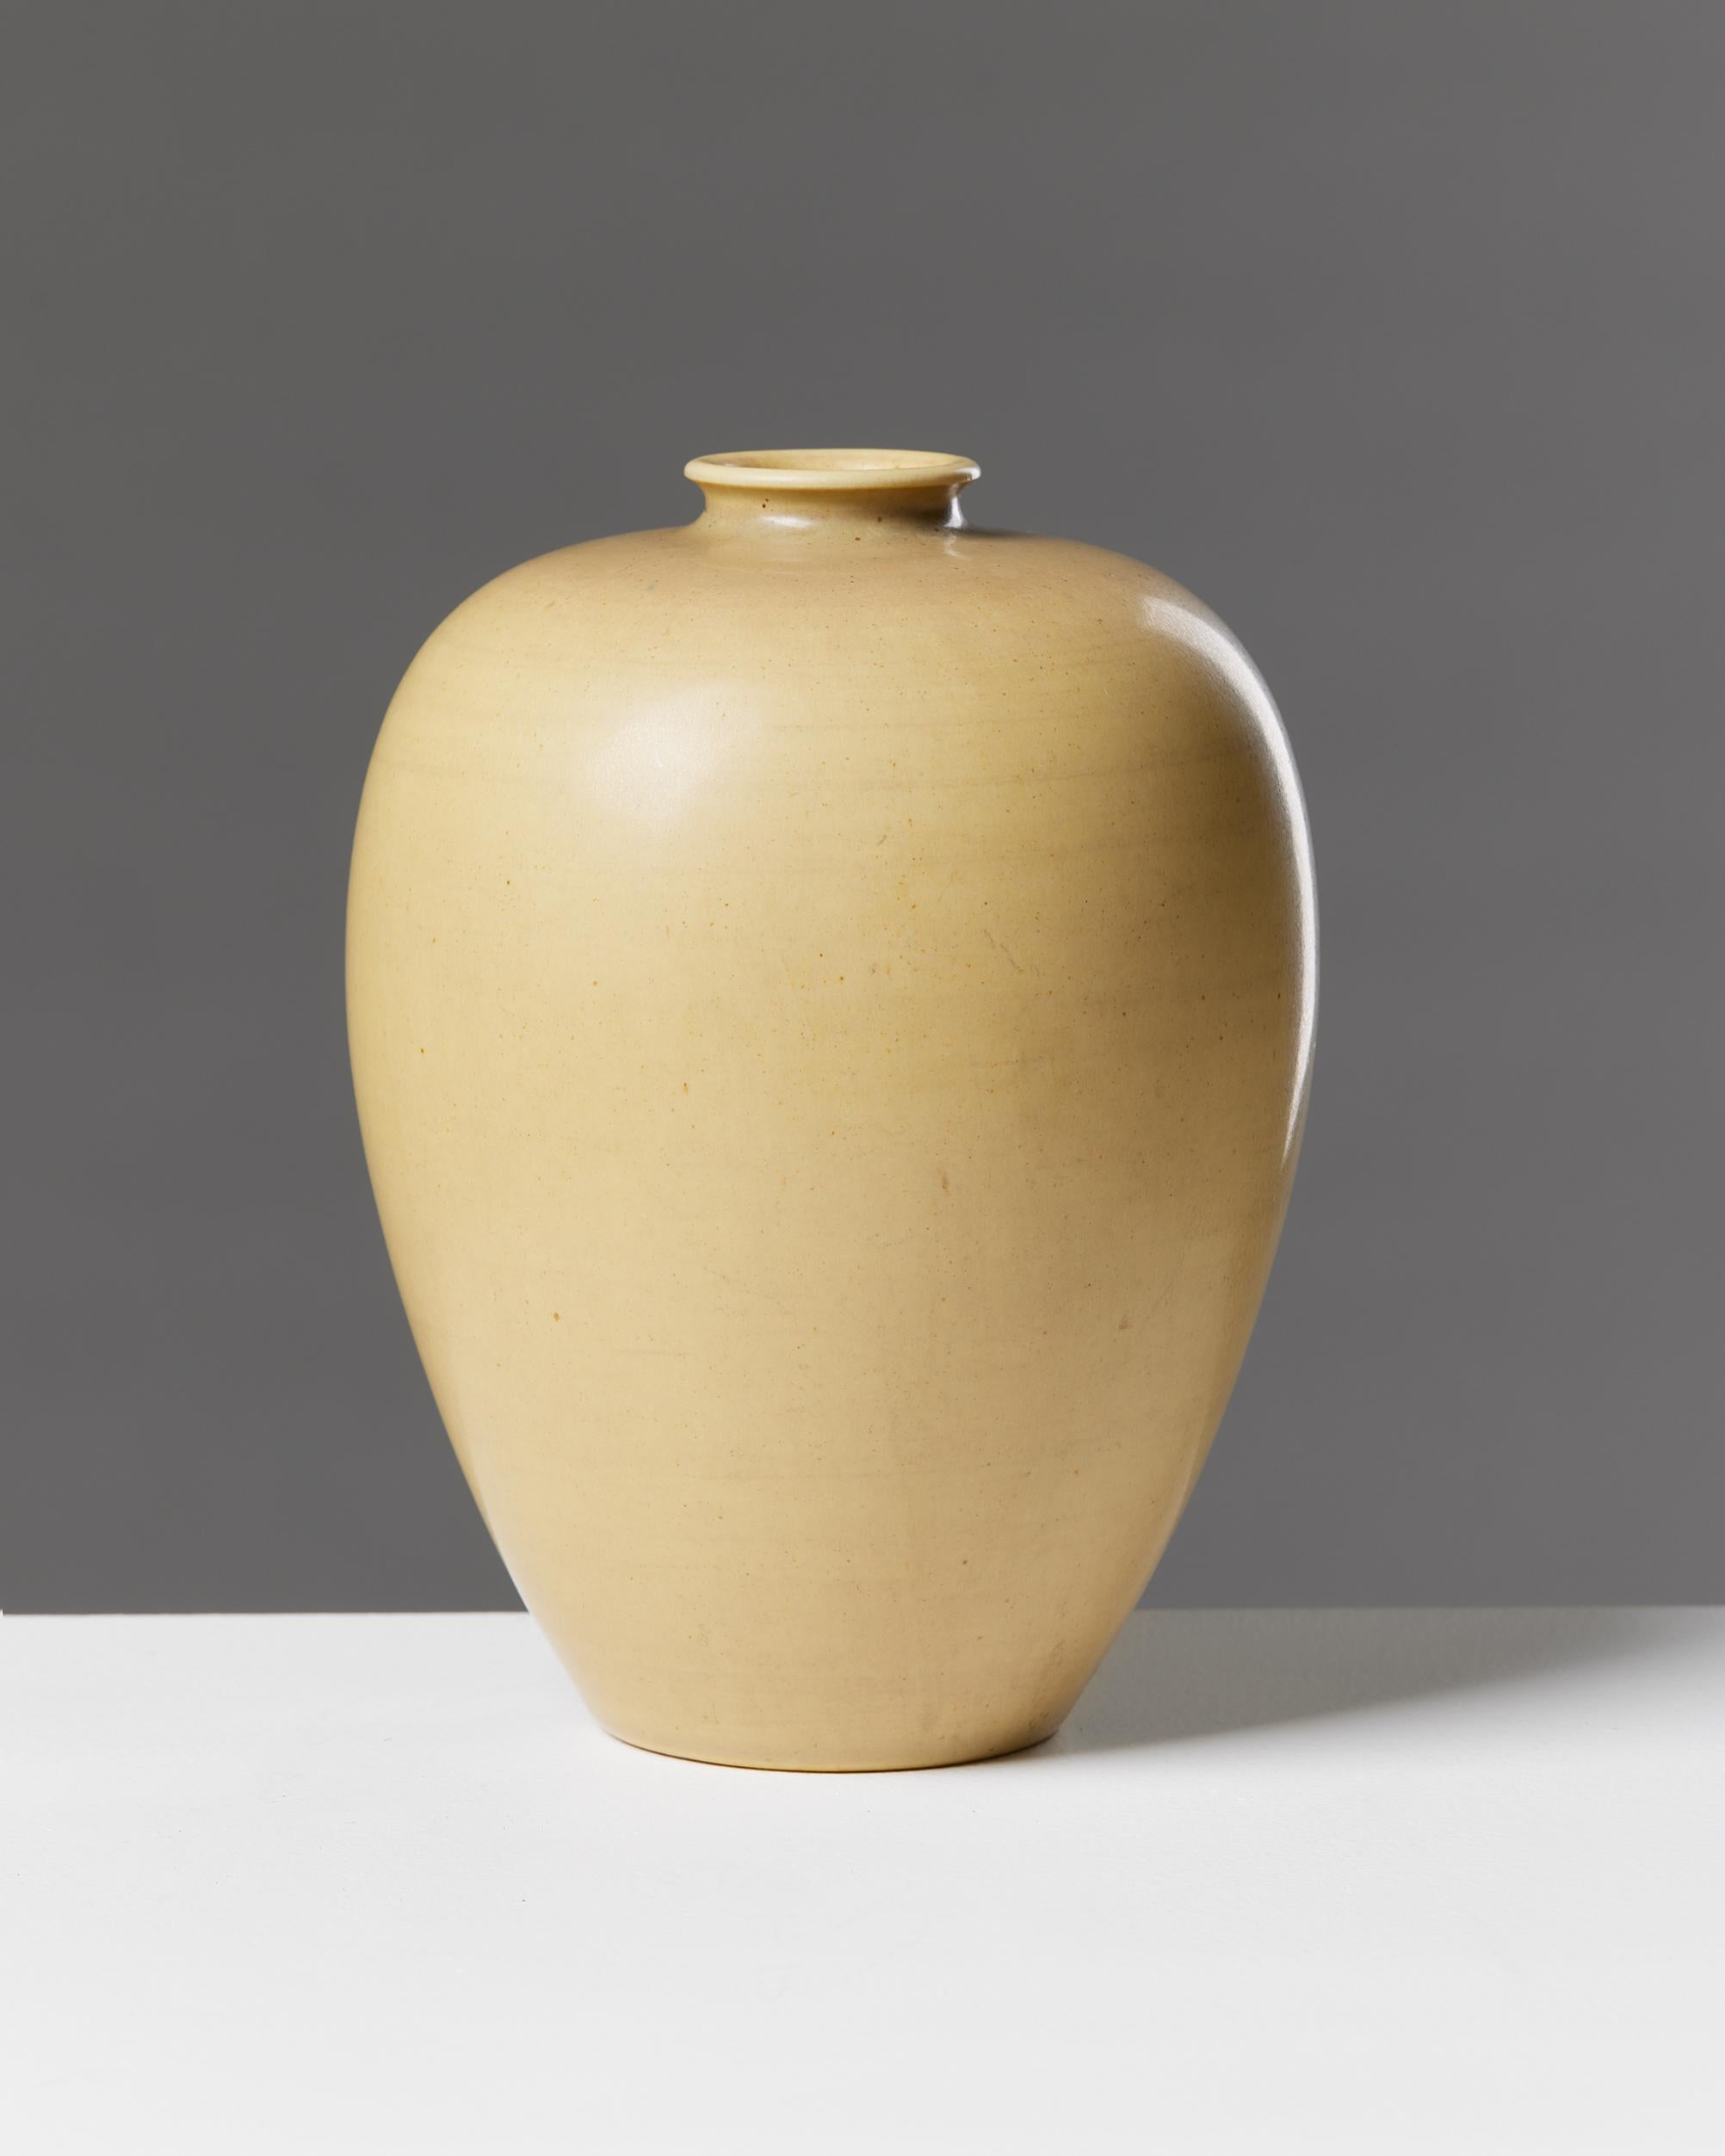 Vase designed by Erich and Ingrid Triller for Tobo, Sweden, 1950s.

Signed.